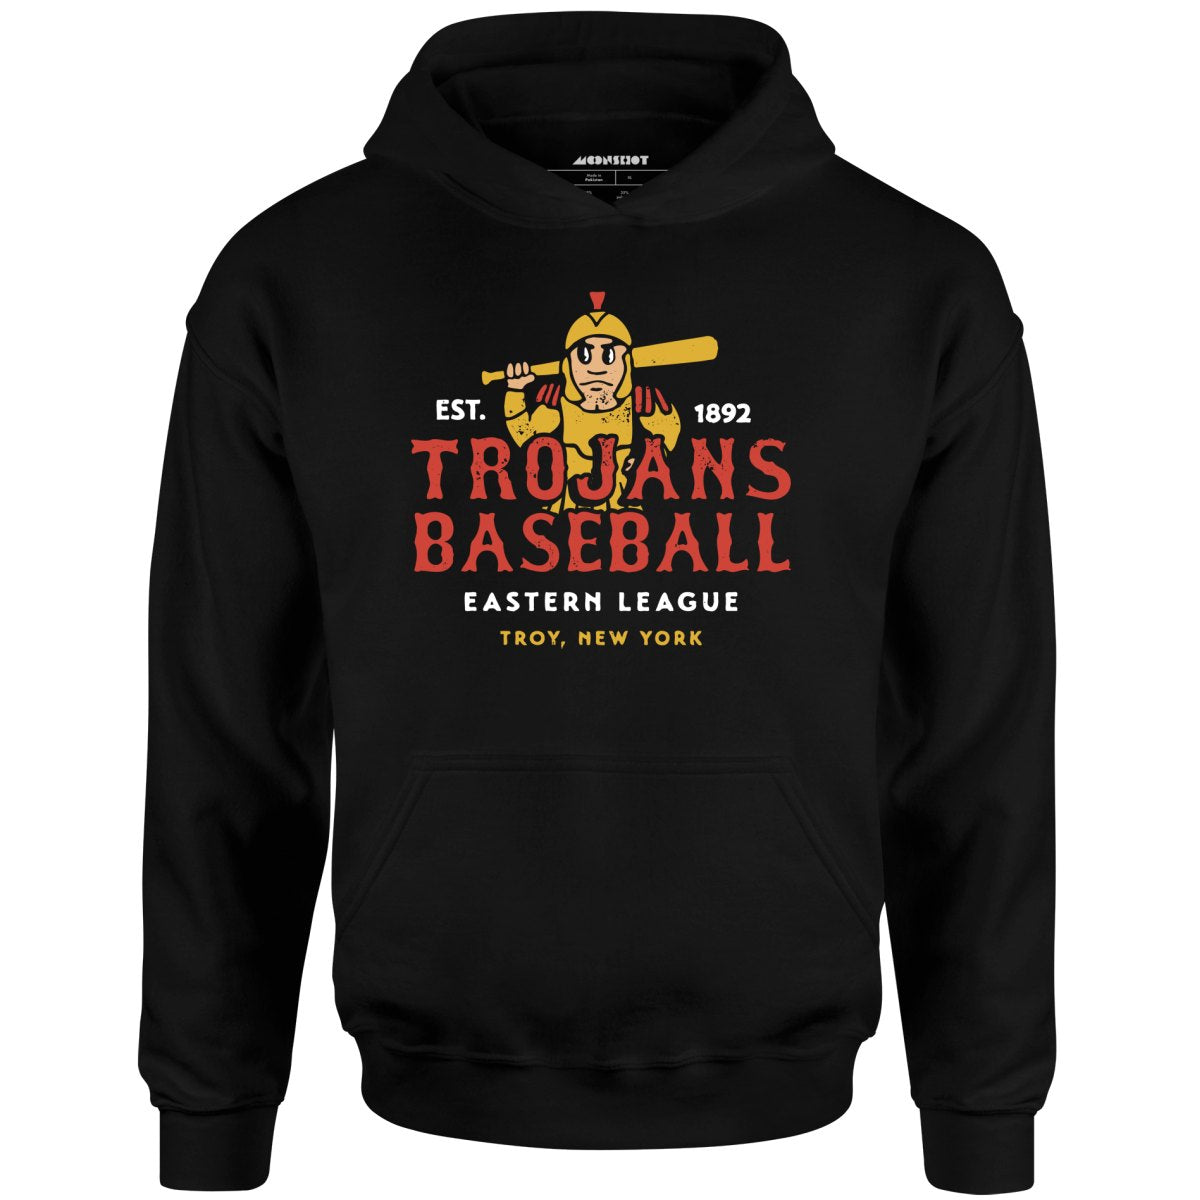 Troy Trojans - New York - Vintage Defunct Baseball Teams - Unisex Hoodie